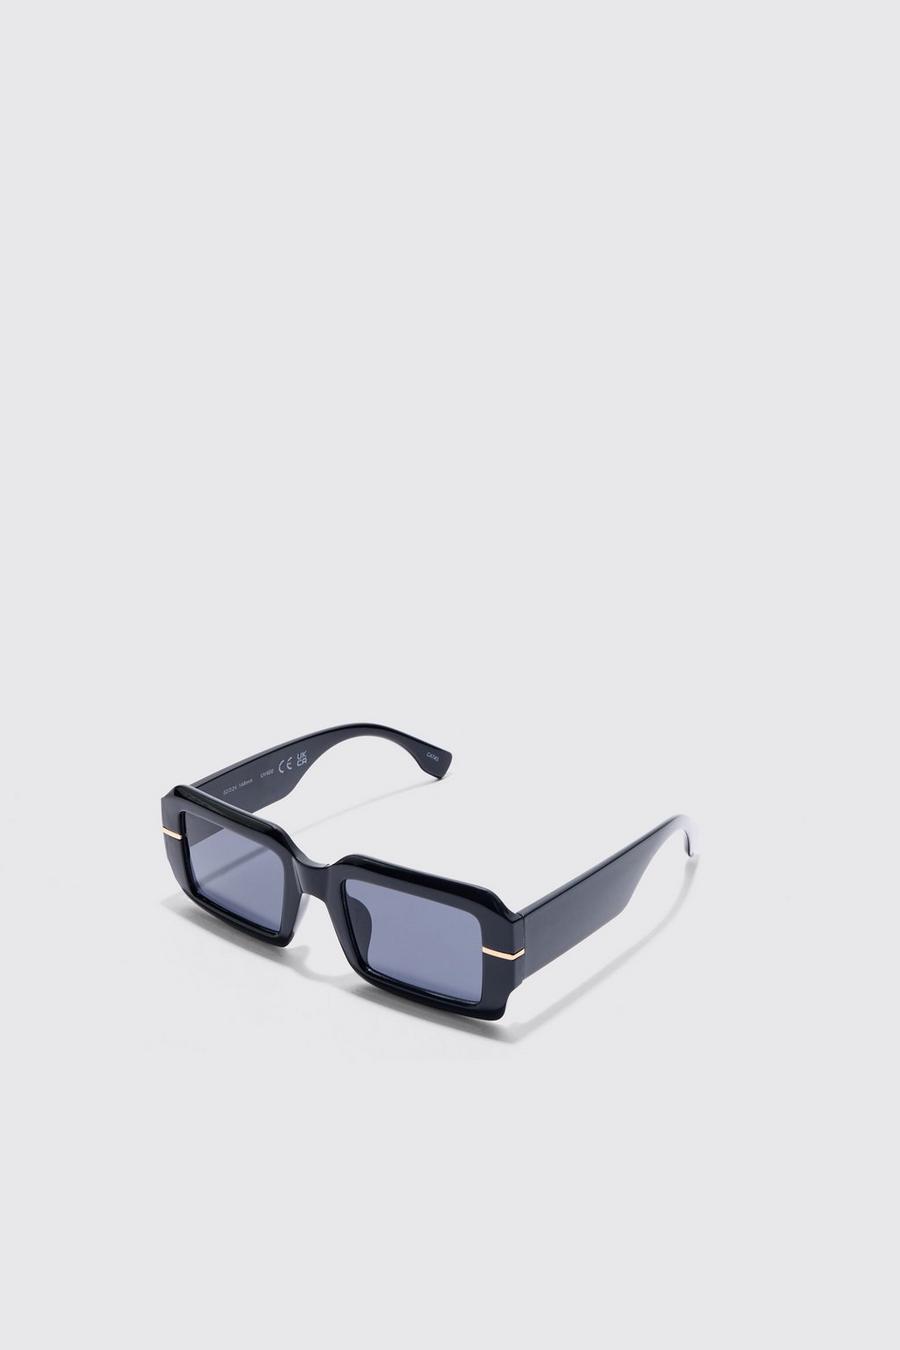 Black Square Plastic Sunglasses